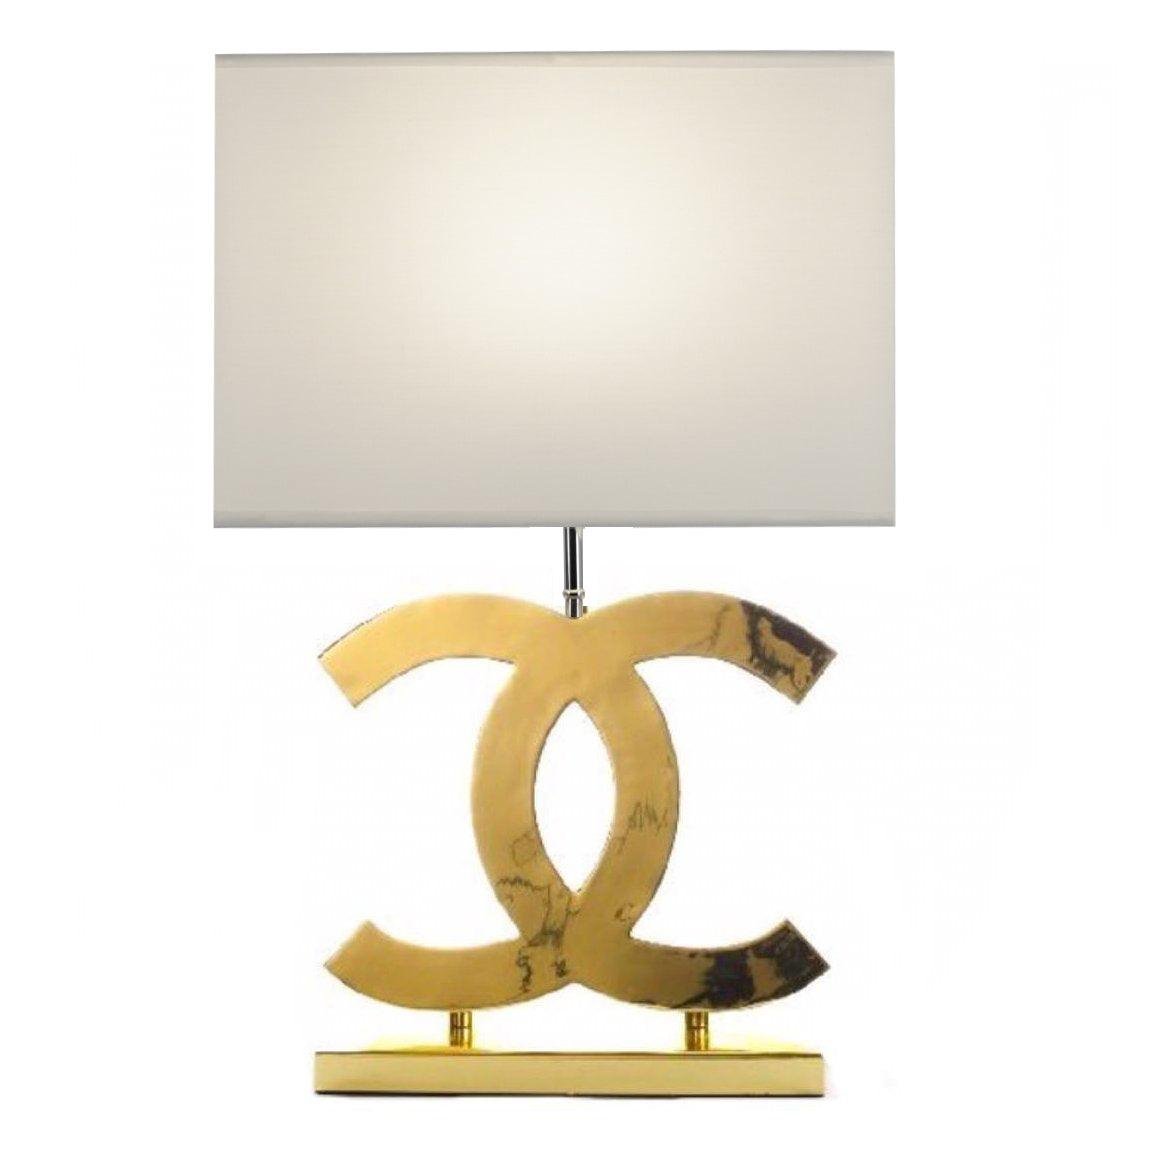 Stainless Steel Table Lamp Φ 14.3″ x H 24.4″ , Dia 36.5cm x H 62cm , Gold+White , EU plug